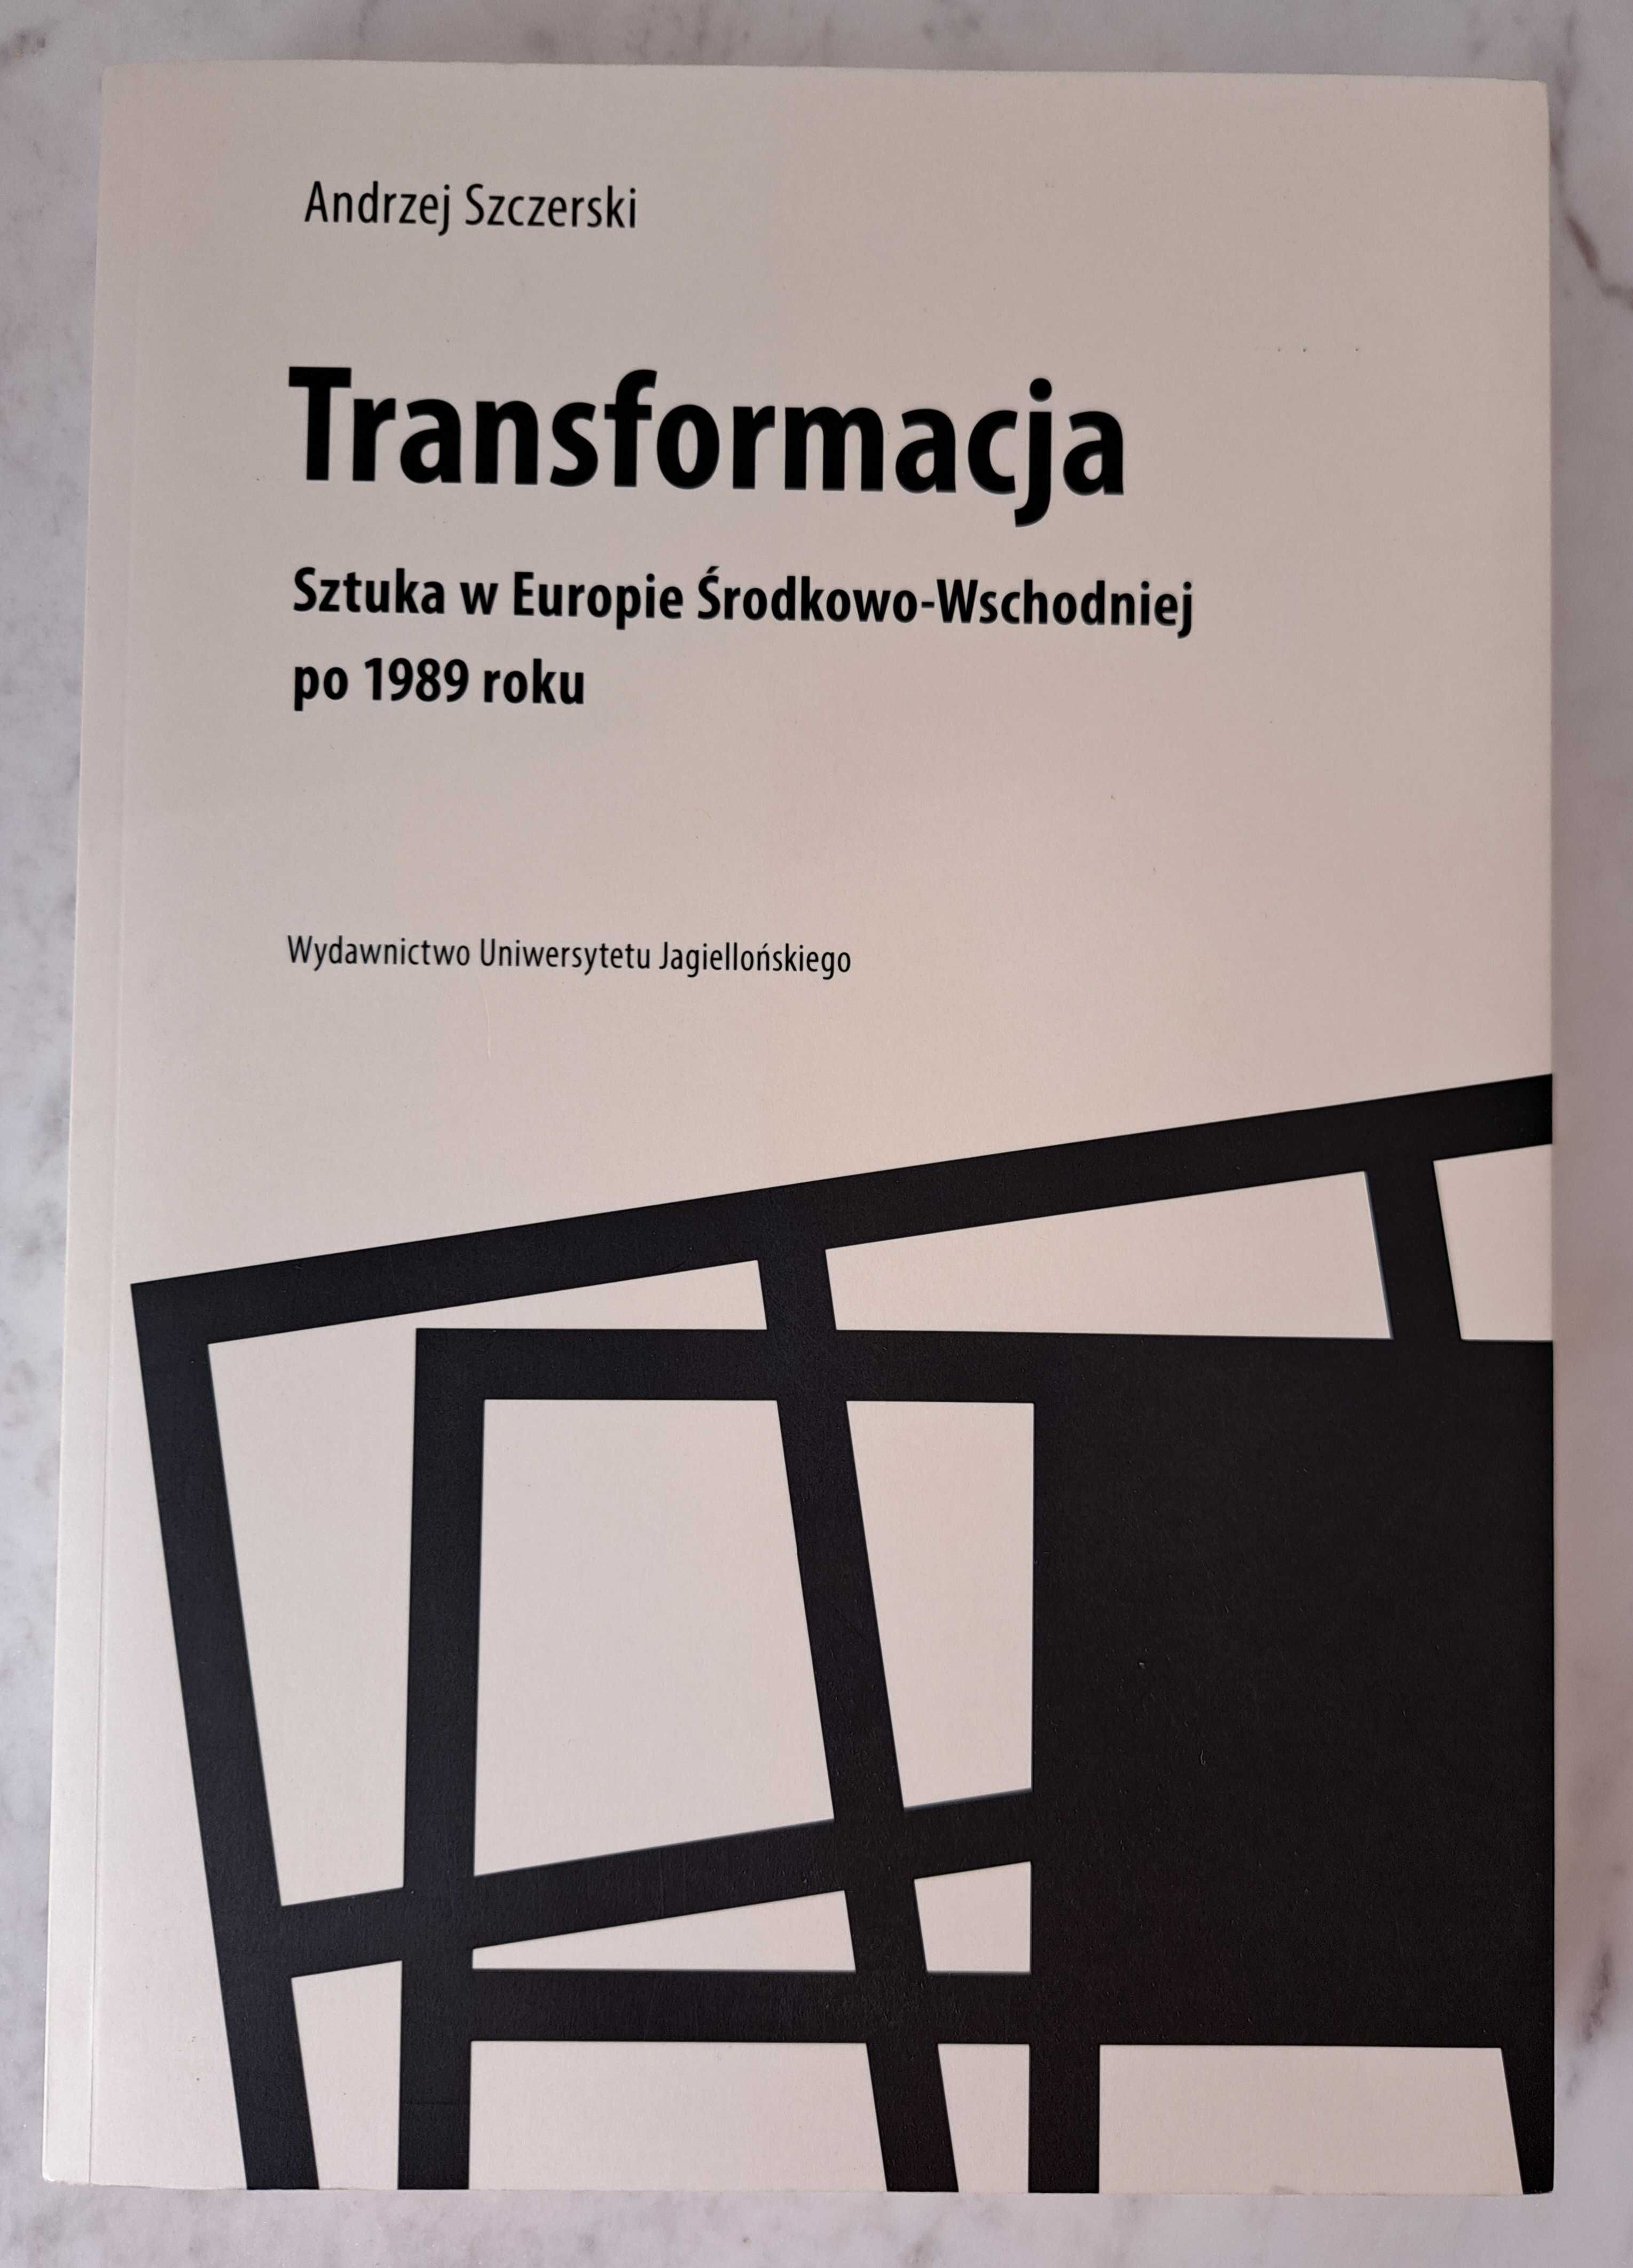 Transformacja sztuka w Europie Środkowo-Wschodniej po 1989 roku